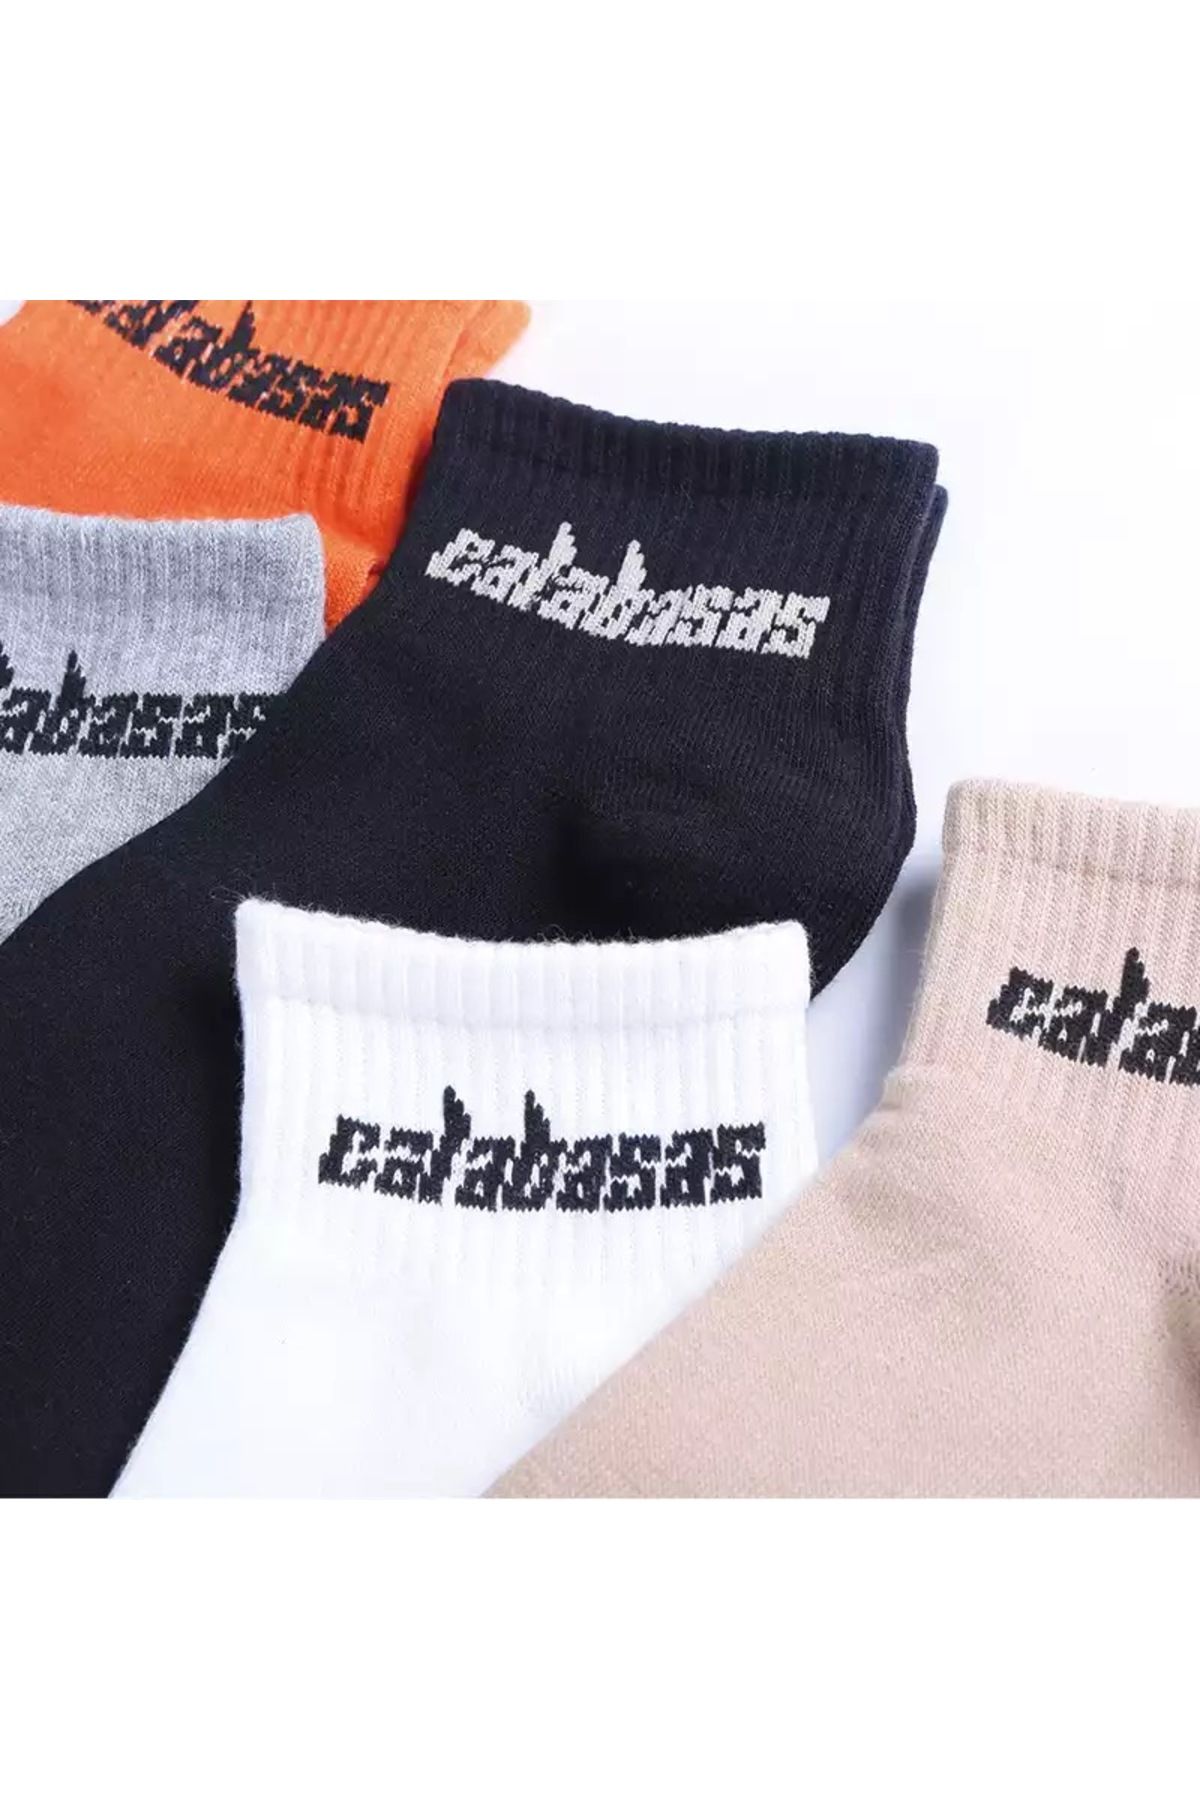 BOSHETTI Unisex Yıkamalı Premium Çok Renkli Sloganlı 3'lü Paket Bilekte Örme Çorap